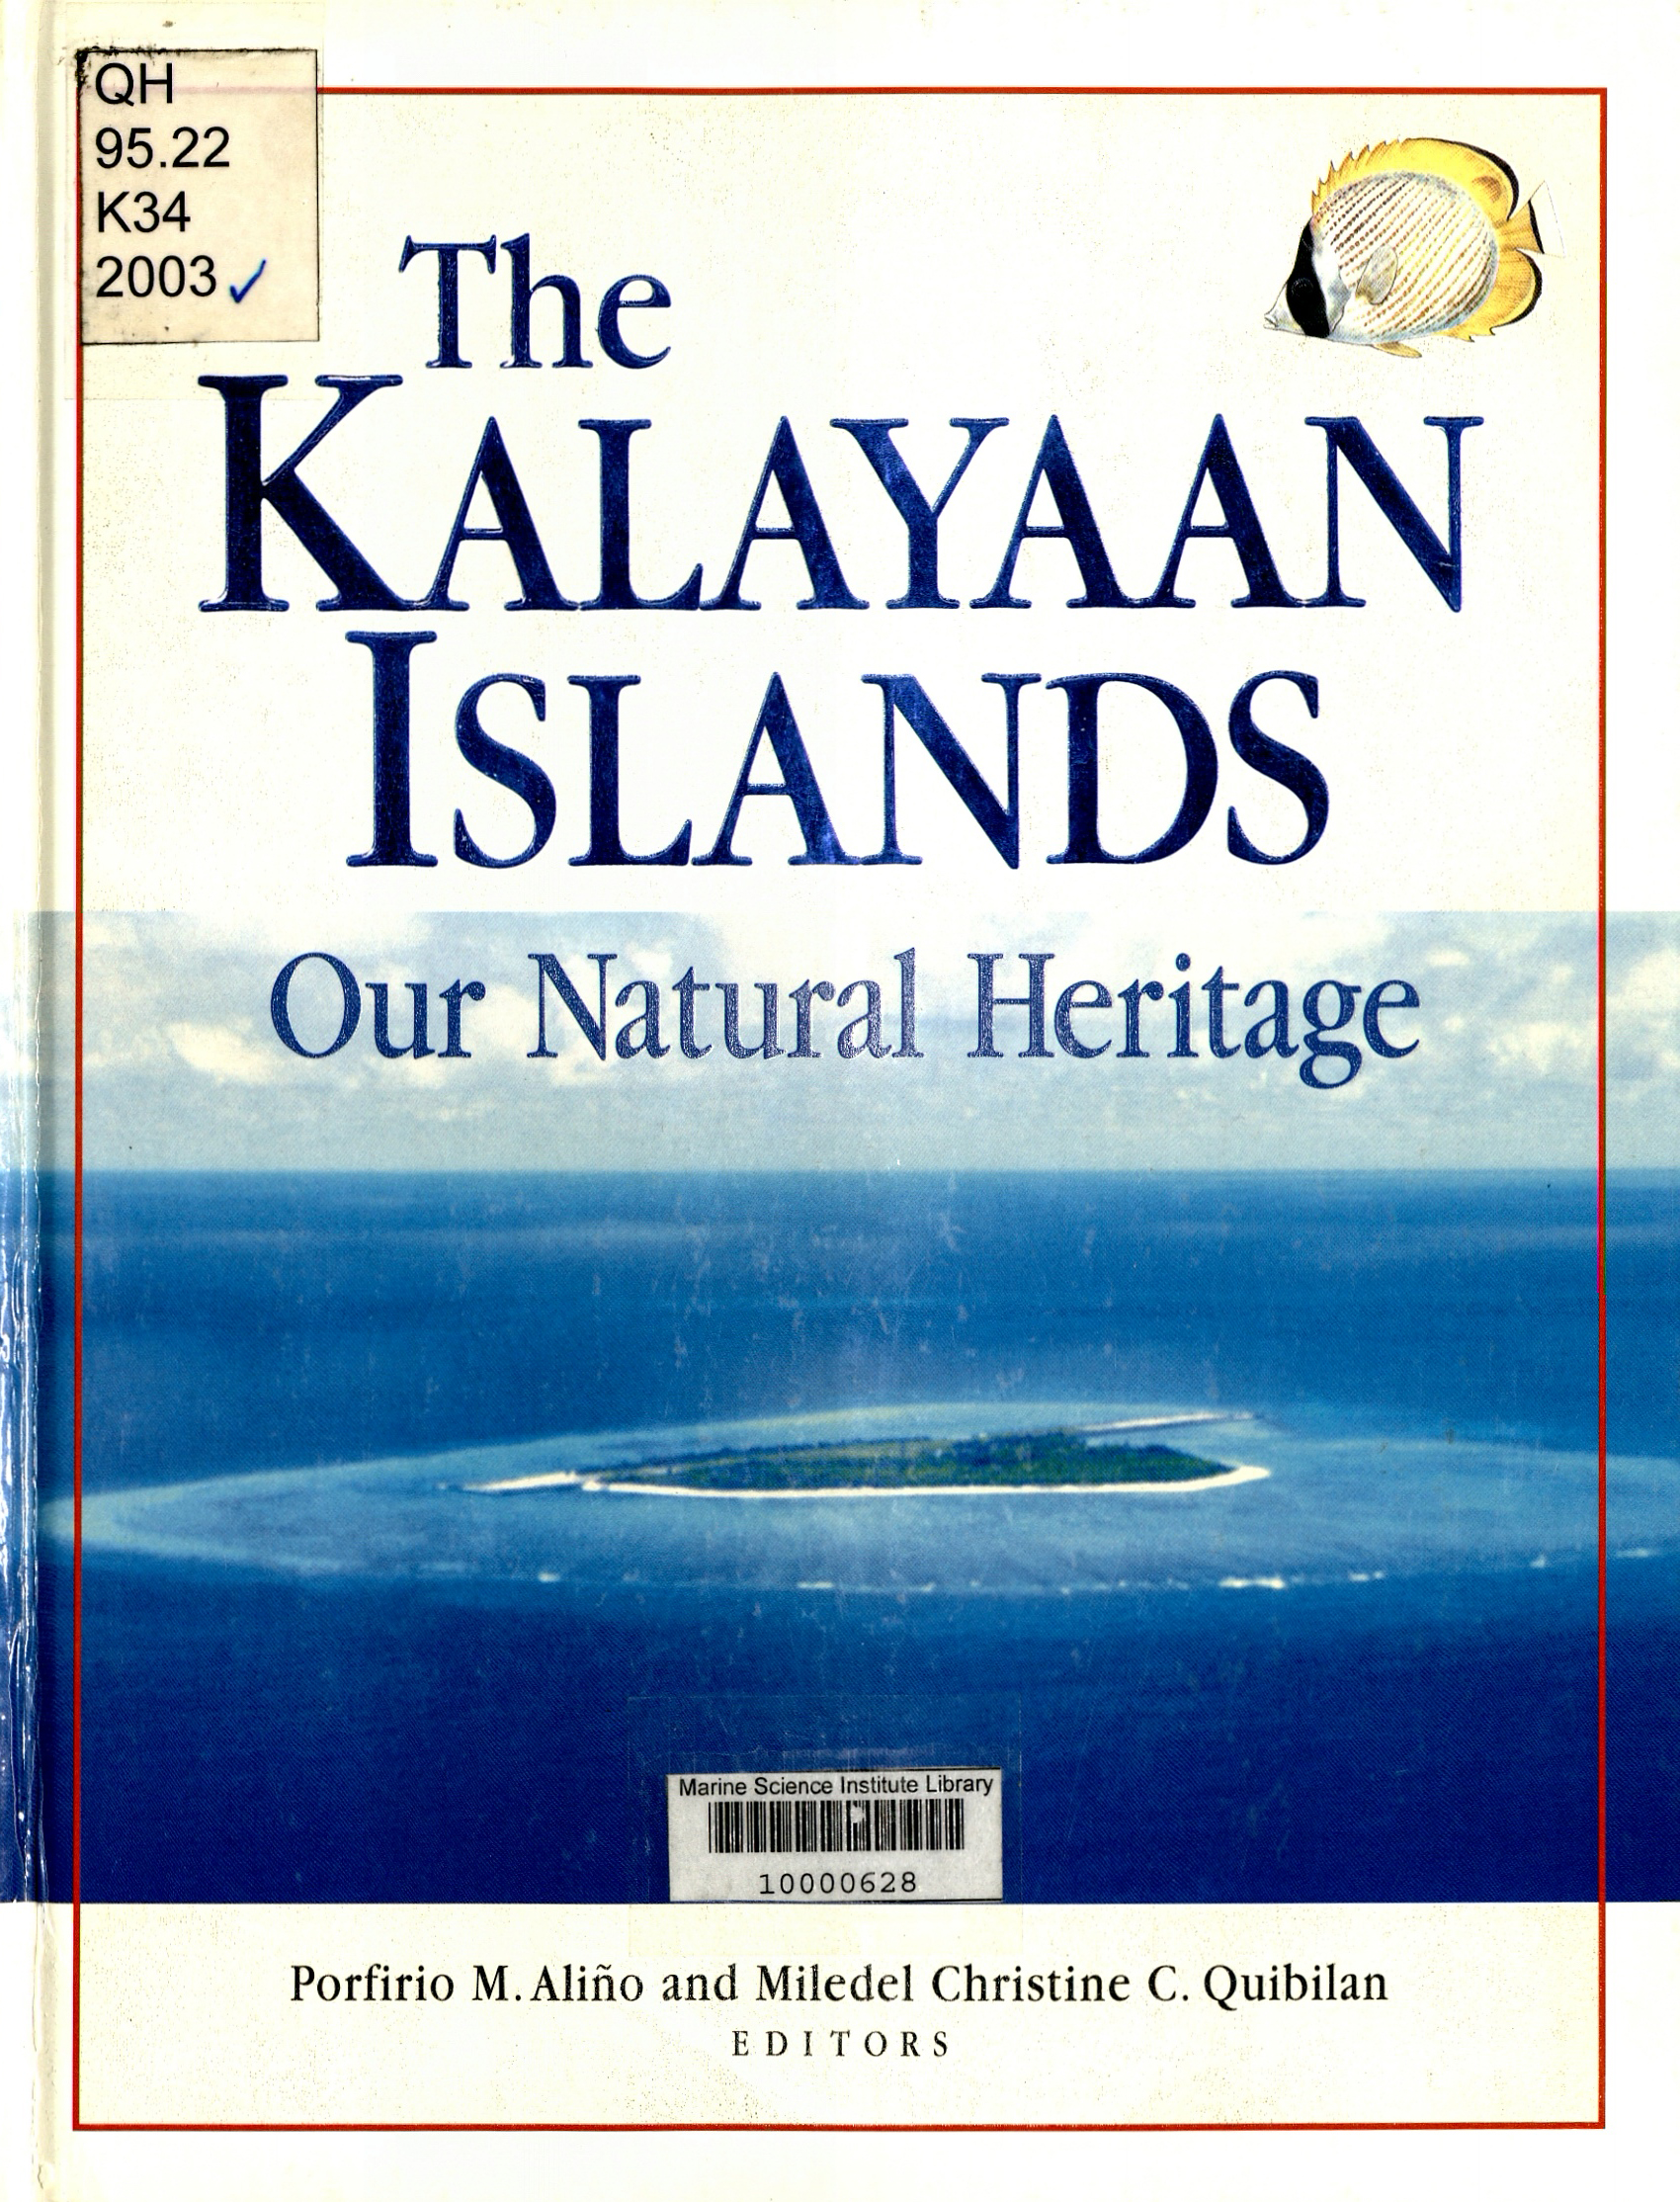 The Kalayaan islands our natural heritage